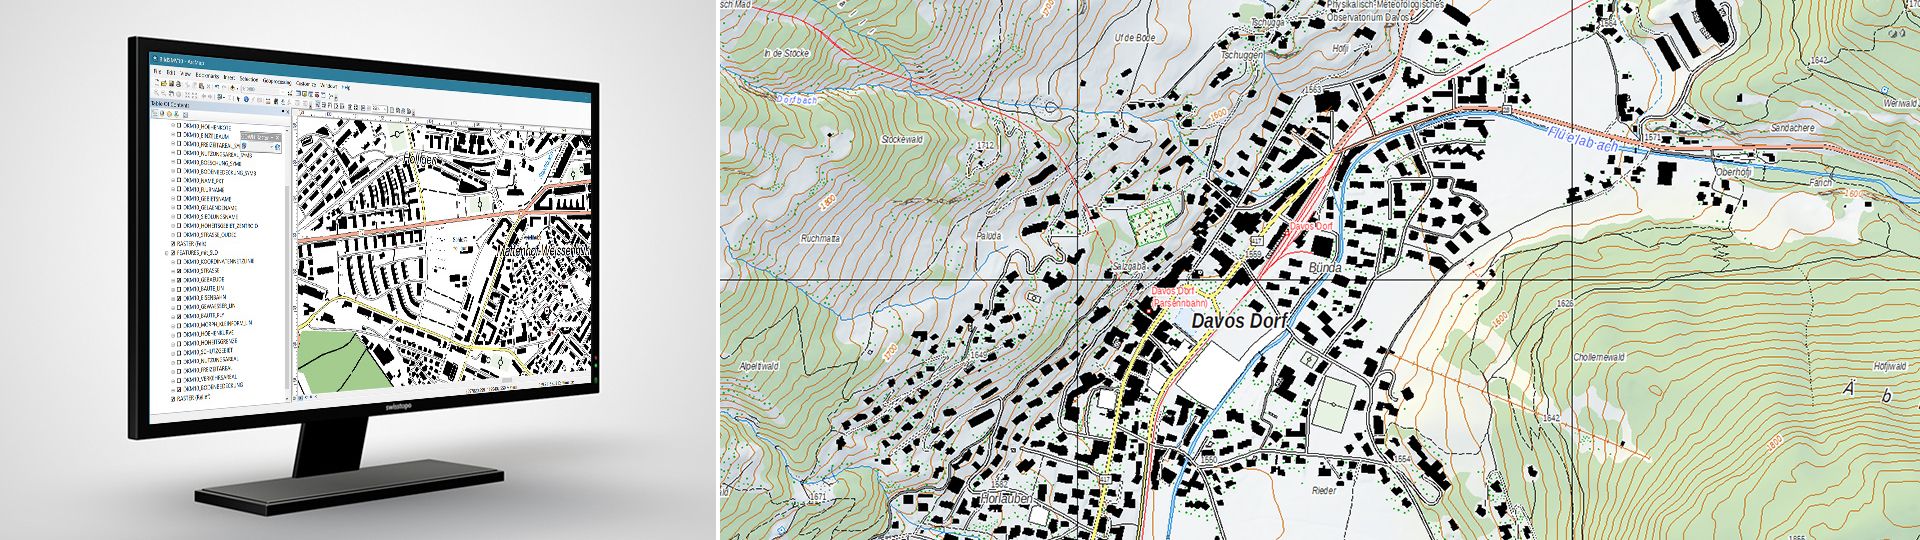 Swiss Map Vector 10: carta geografica vettoriale della Svizzera 1:10 000